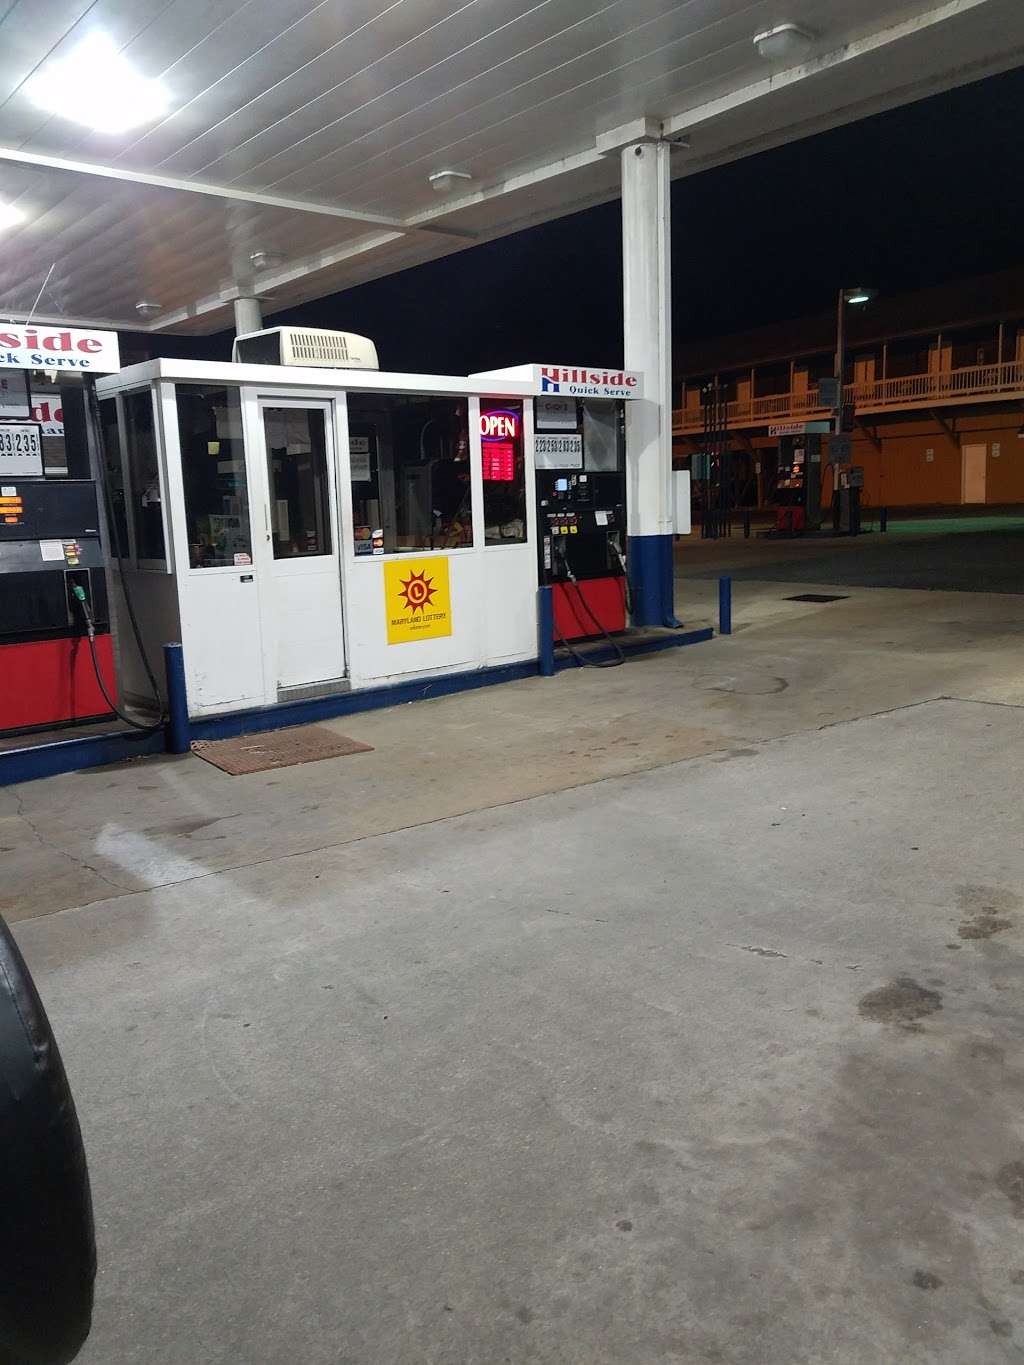 Hillside Quick Serve Gas Station & Motel | 2630 Centreville Rd, Centreville, MD 21617 | Phone: (410) 758-2270